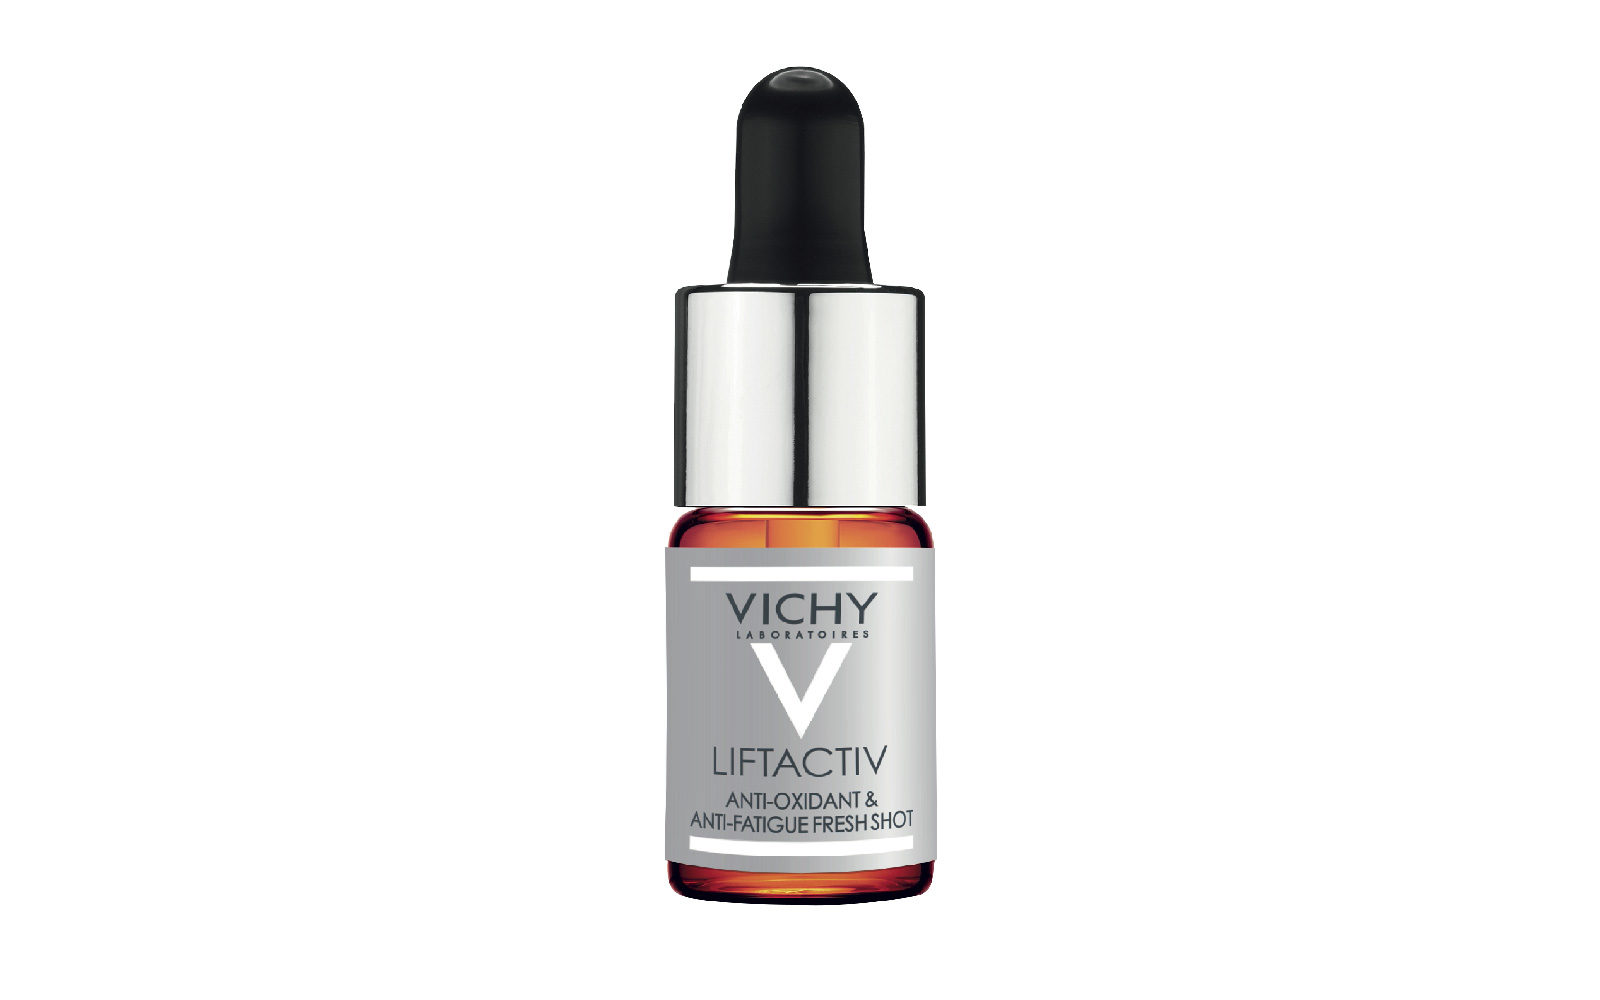 15% di vitamina C pura per Lifactiv Concentrato Fresco Antiossidante & Antifatica di Vichy che assicura in dieci giorni di utilizzo una pelle più giovane (farmacia, 34,50 euro).